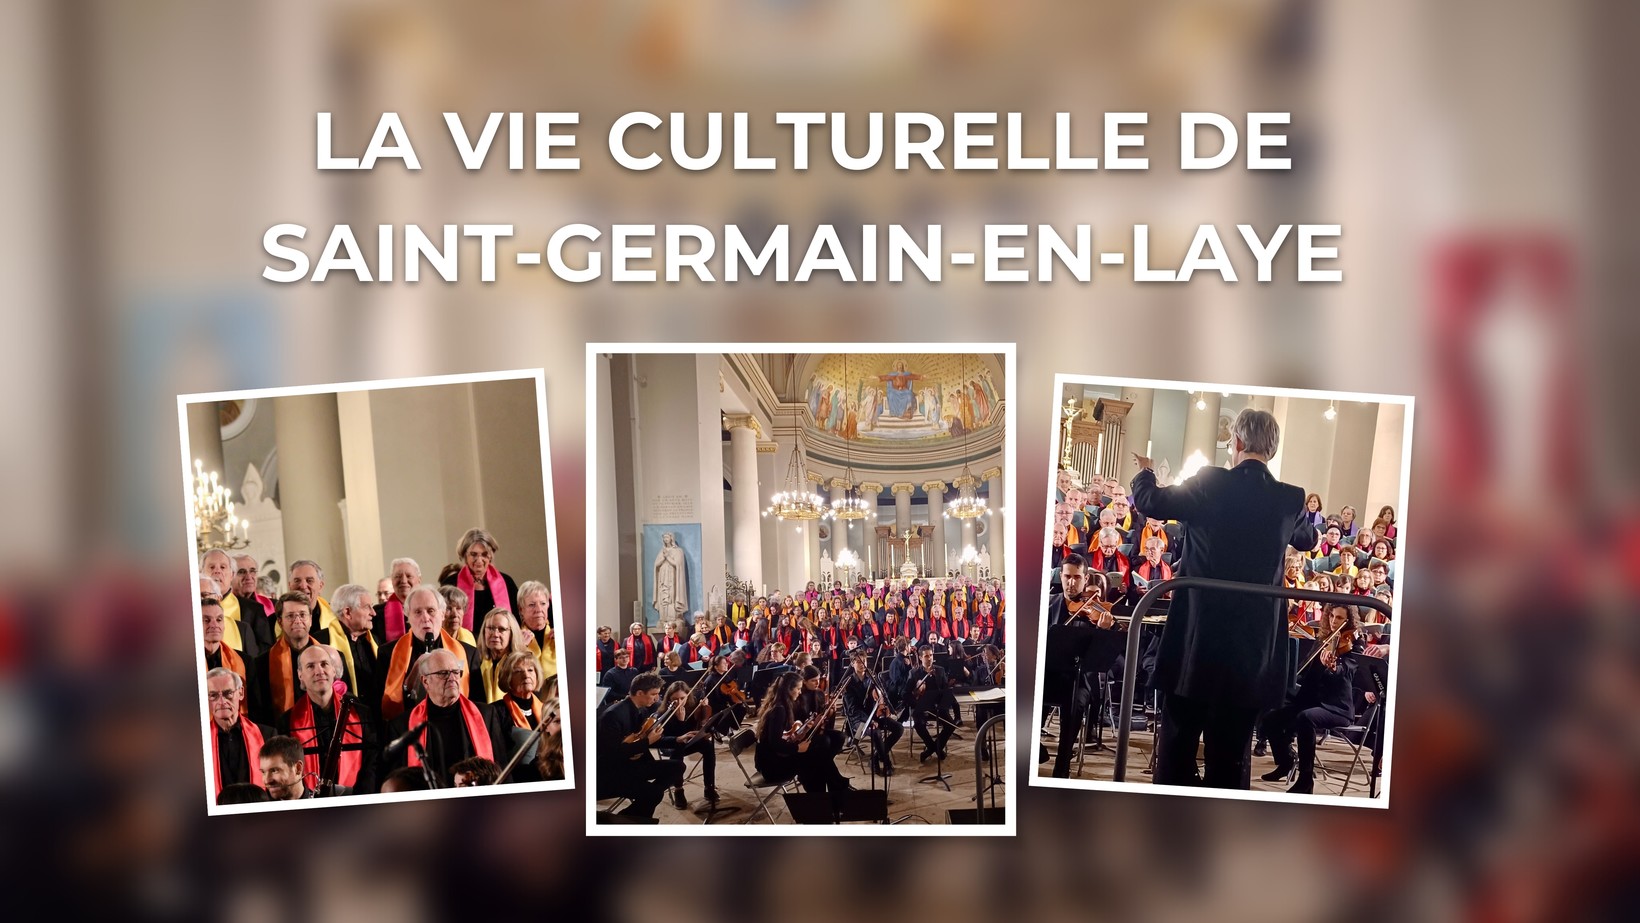 Coldwell Banker s'investit dans la vie culturelle de Saint-Germain-en-Laye